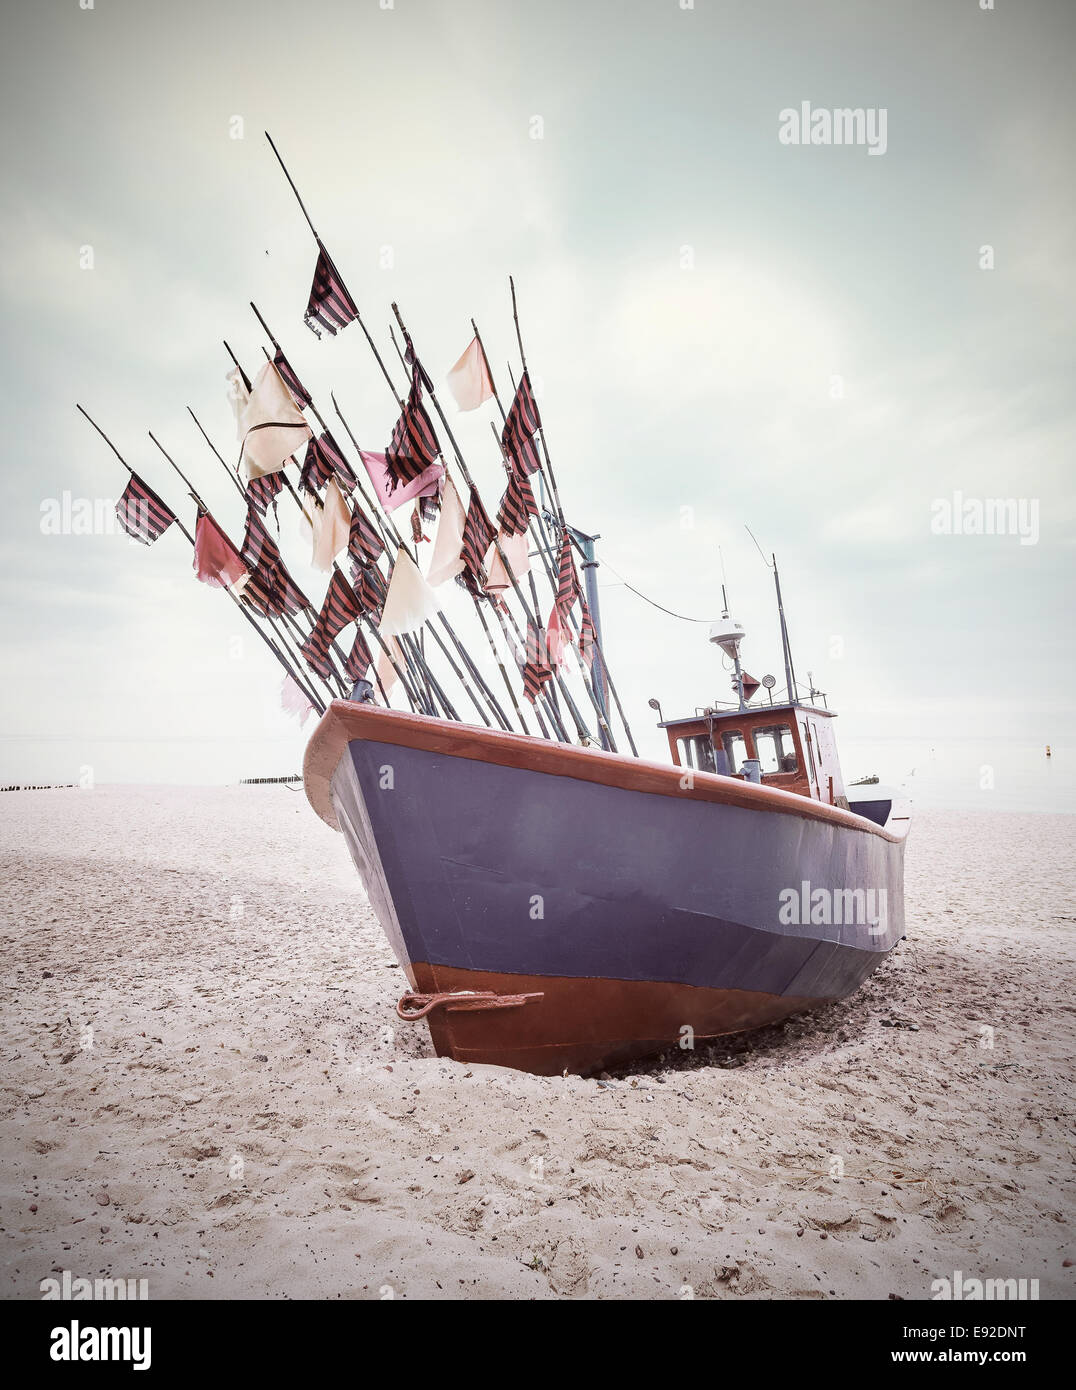 Petit bateau de pêche sur les rives de la mer Baltique, vintage style rétro. Banque D'Images